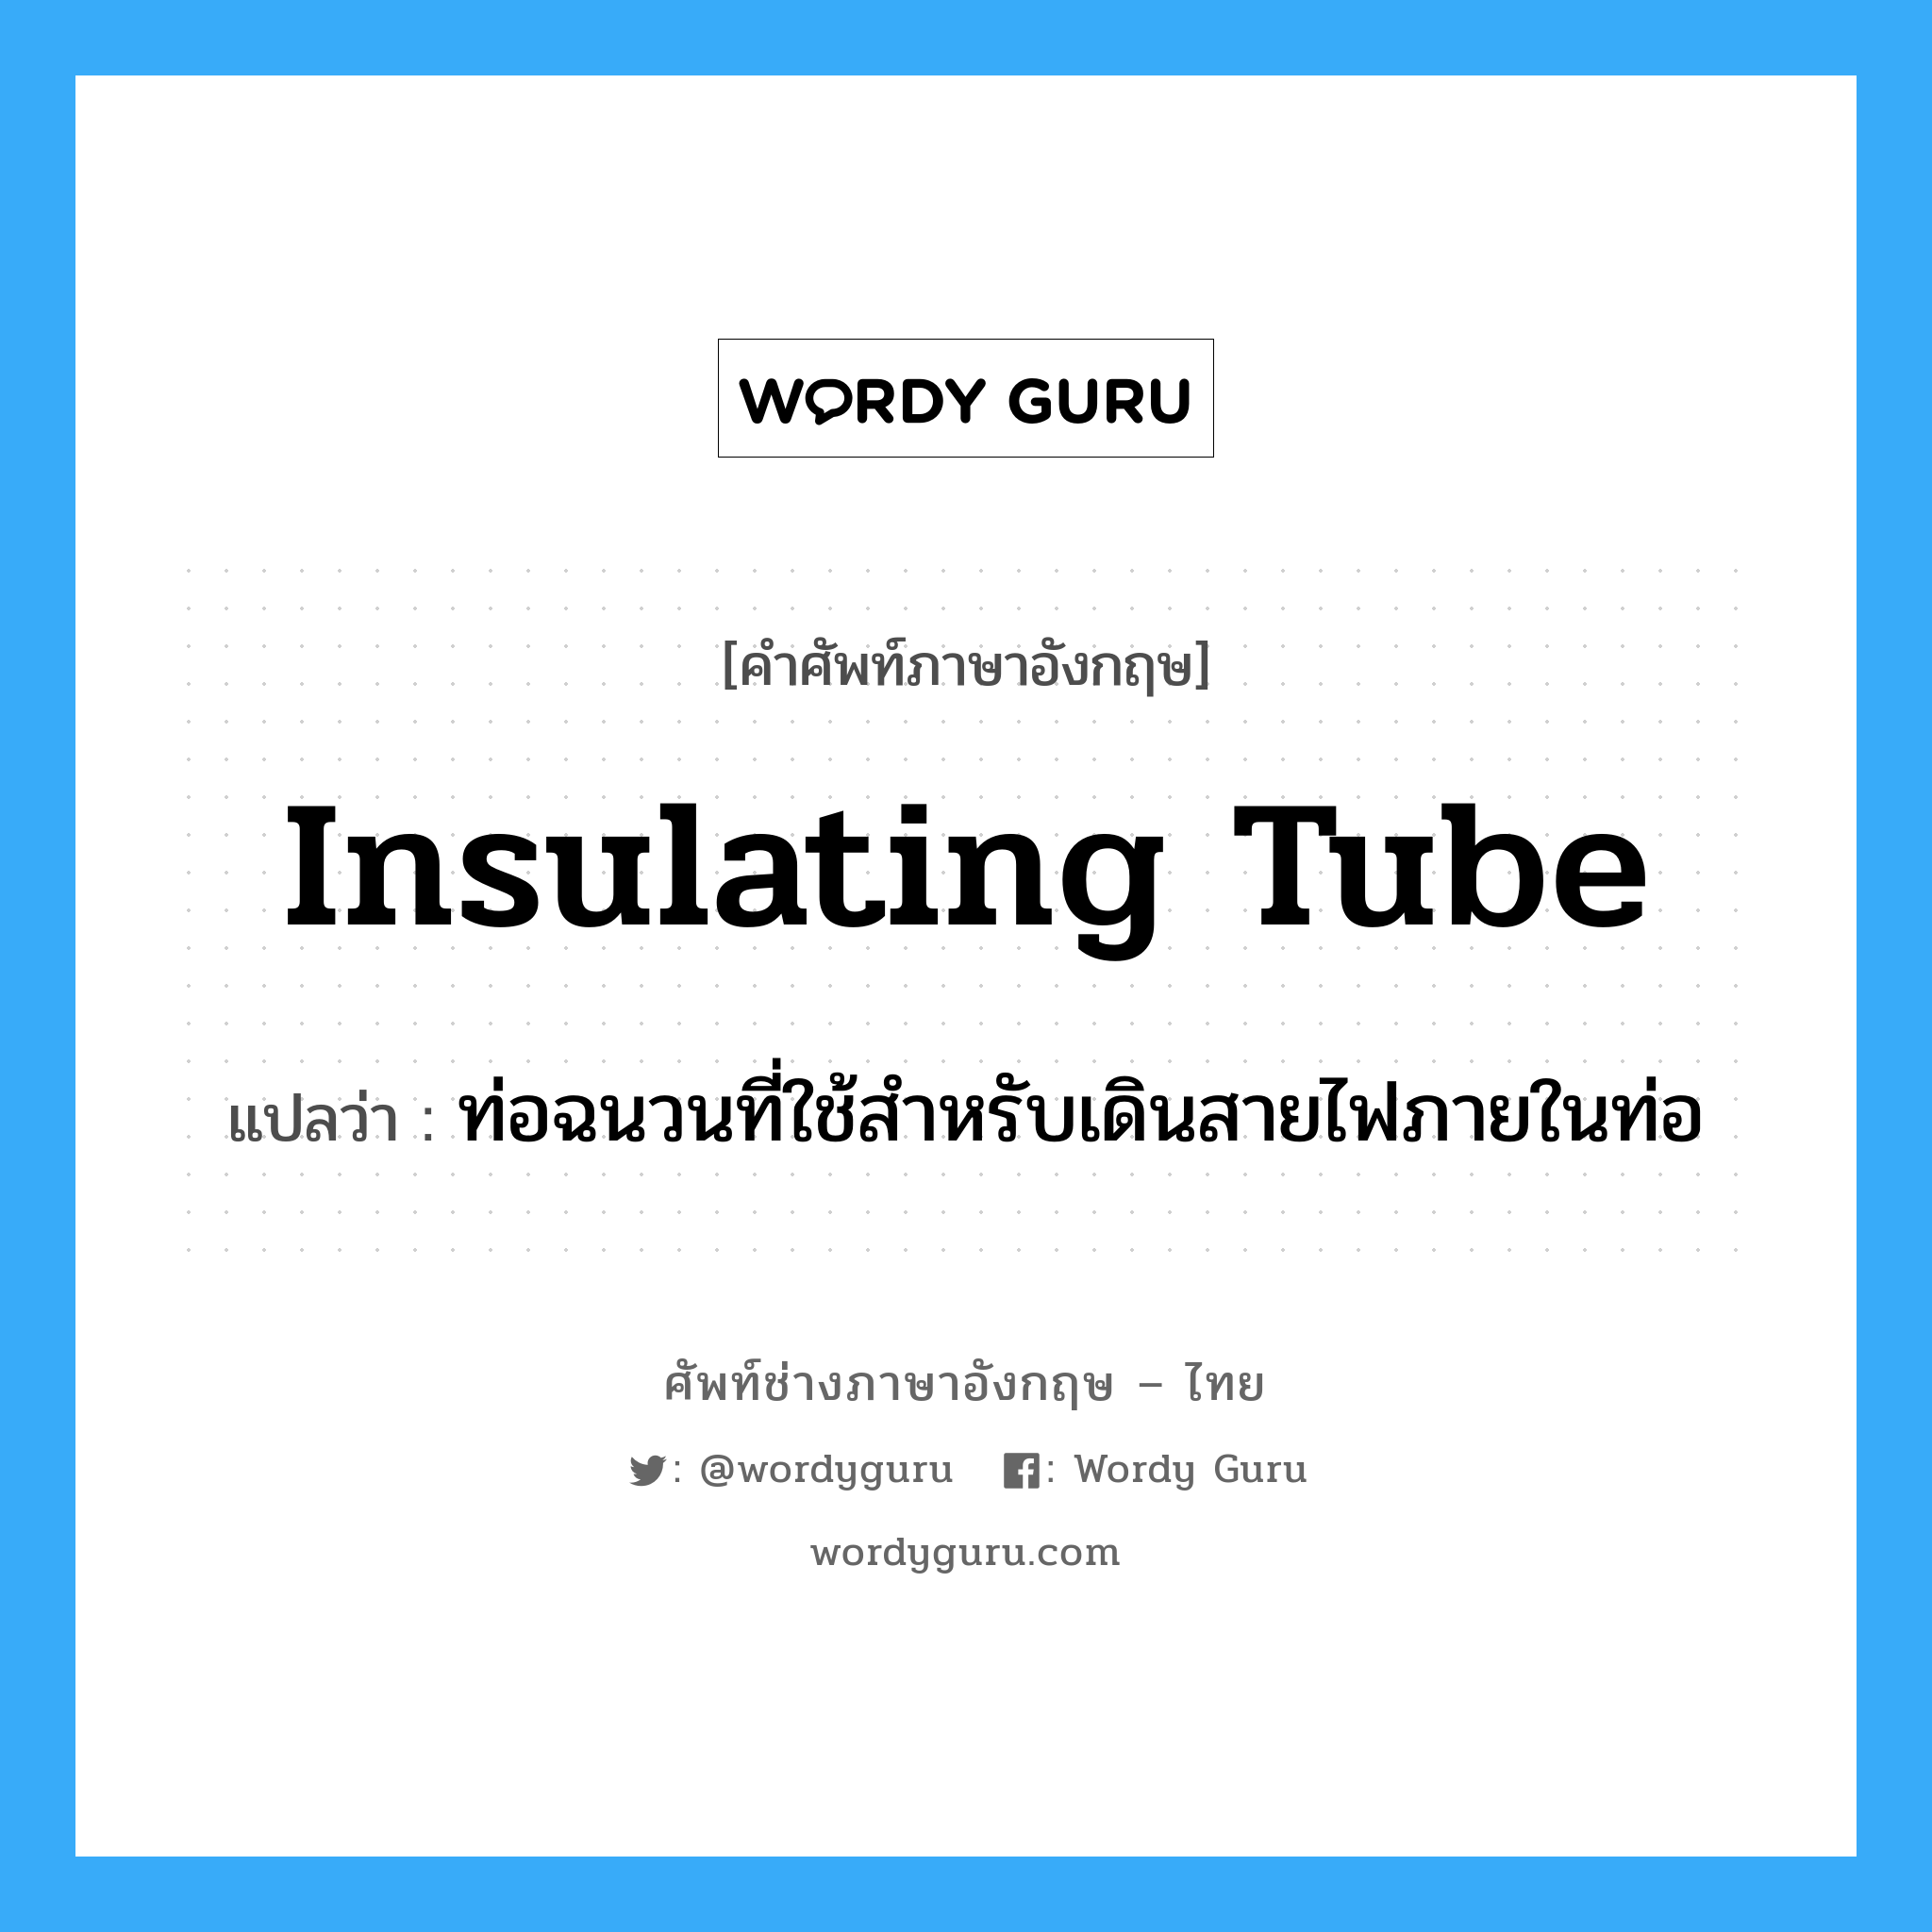 insulating tube แปลว่า?, คำศัพท์ช่างภาษาอังกฤษ - ไทย insulating tube คำศัพท์ภาษาอังกฤษ insulating tube แปลว่า ท่อฉนวนที่ใช้สำหรับเดินสายไฟภายในท่อ